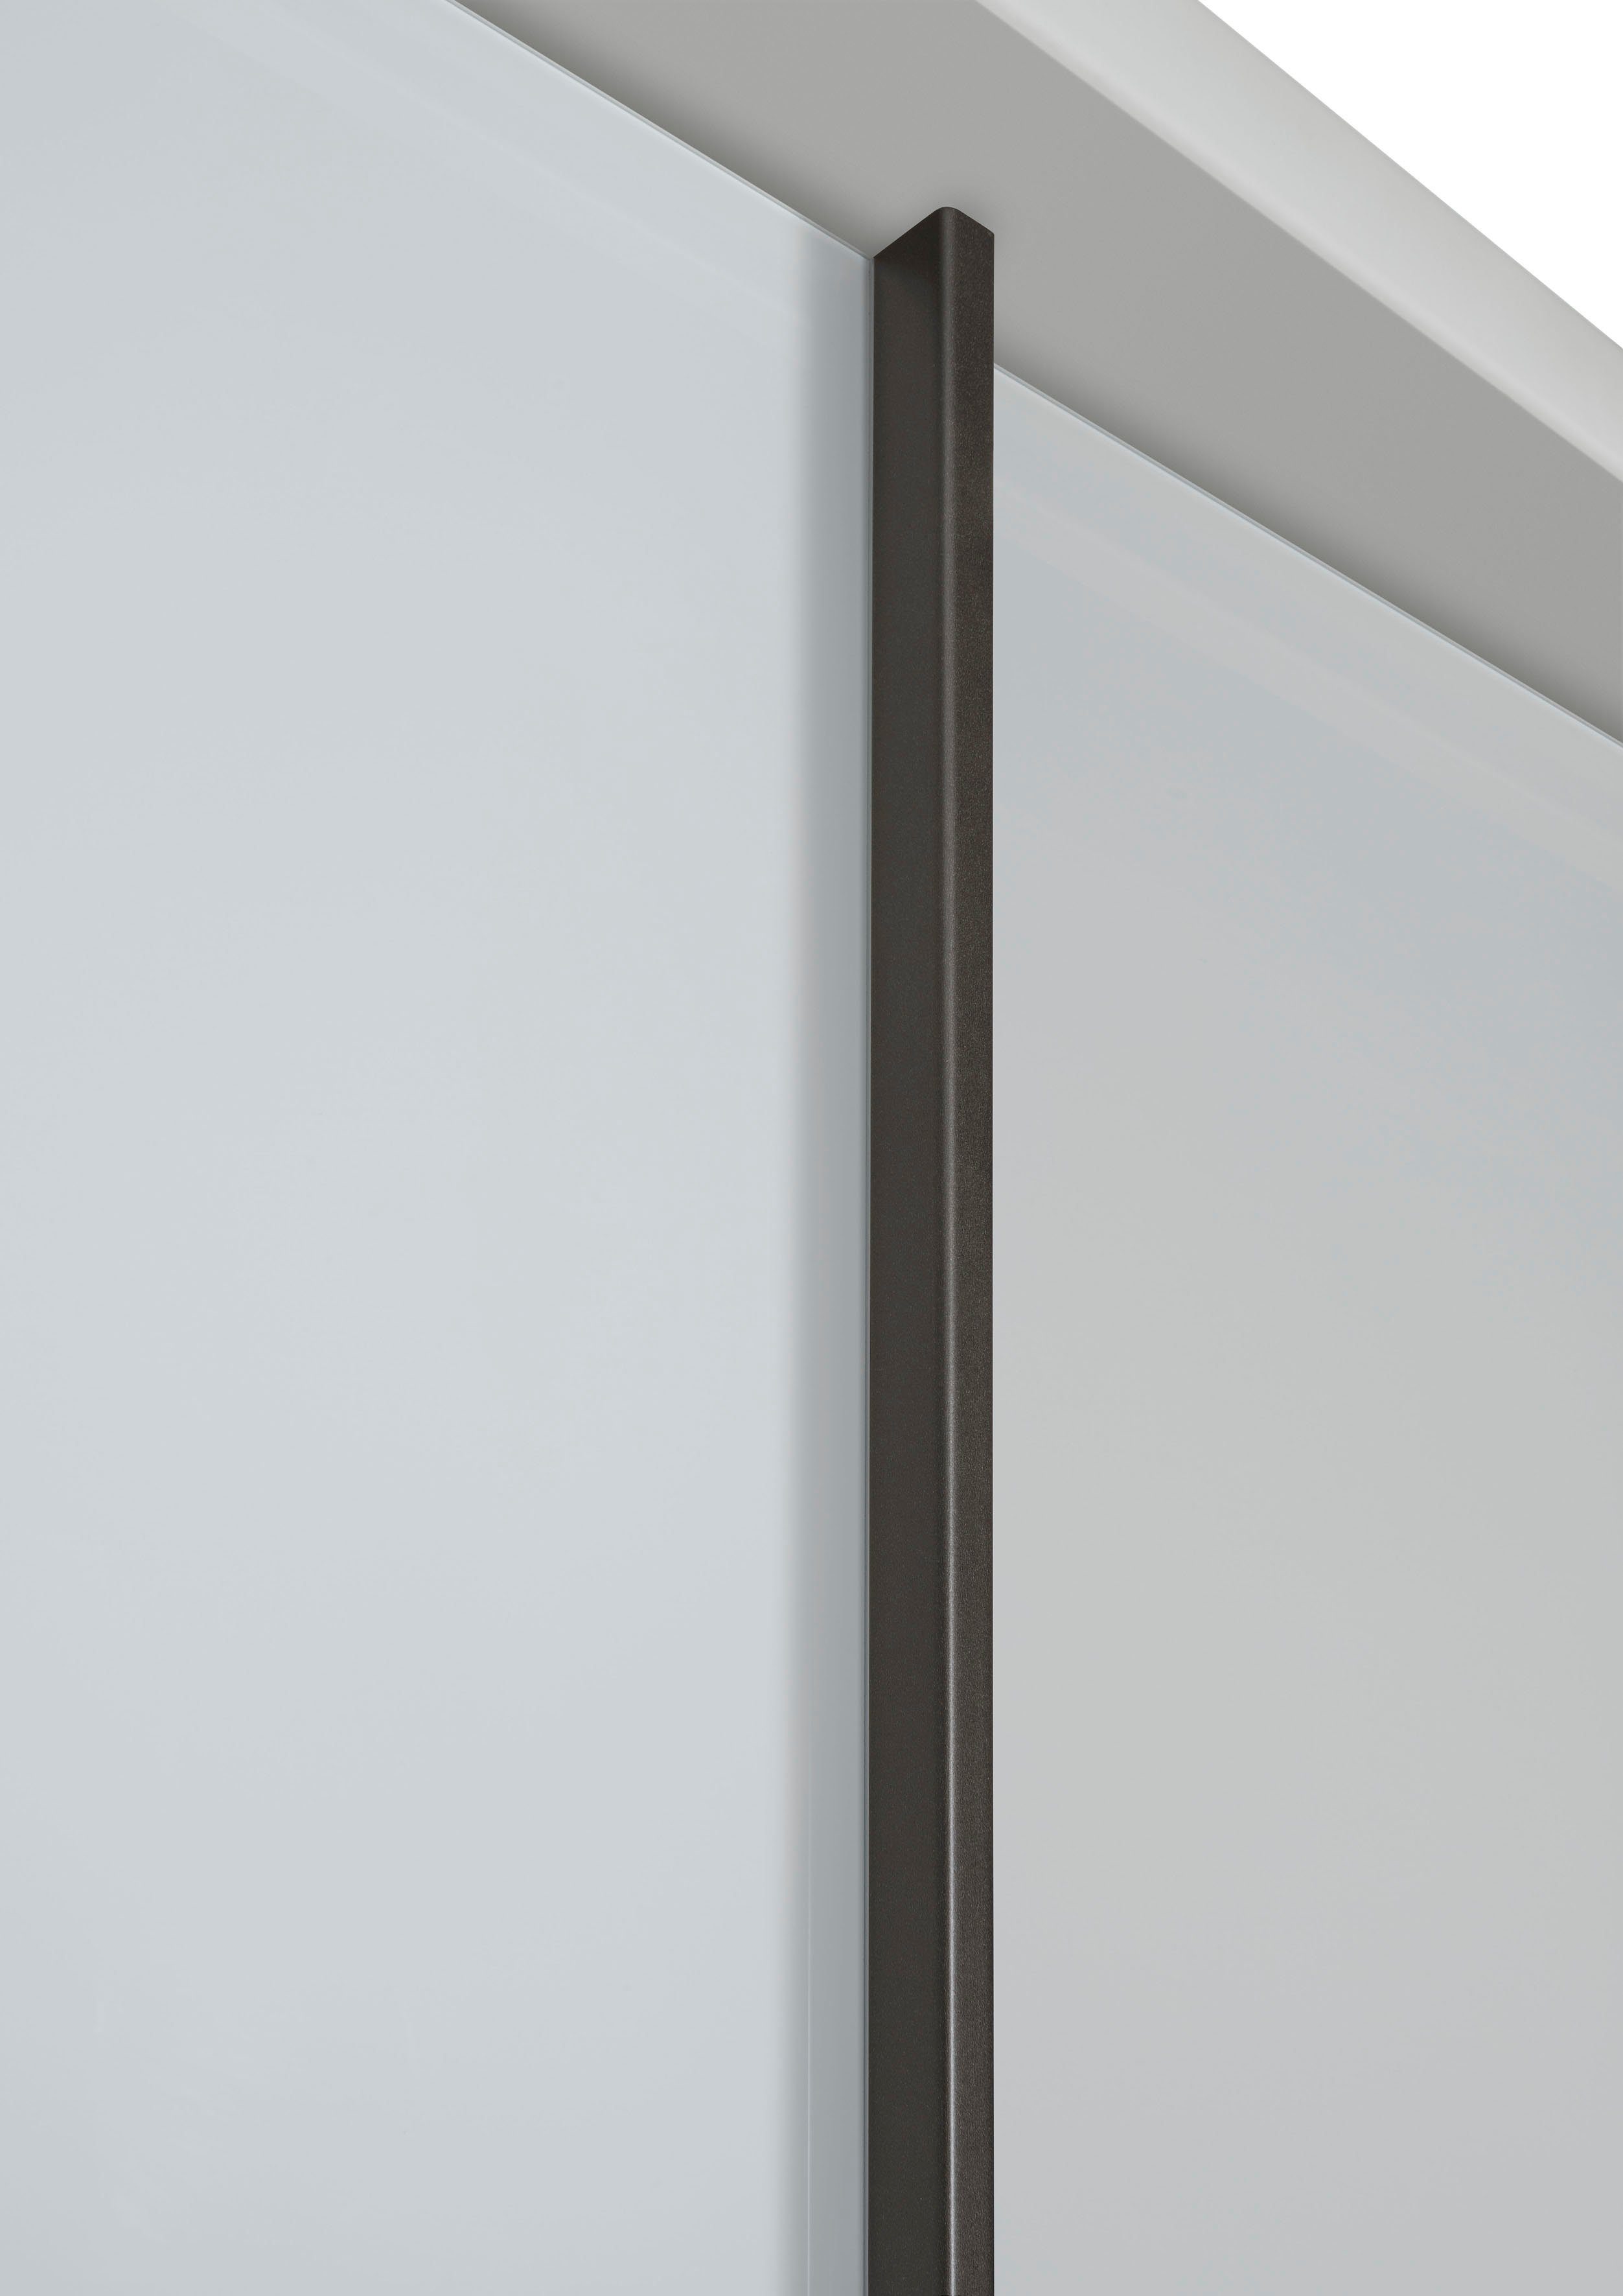 WIEMANN und Glas- Bianco-Eiche-Nachbildung/Glas Spiegelfront Schwebetürenschrank hochwertige Weiß/Kristallspiegel Monaco